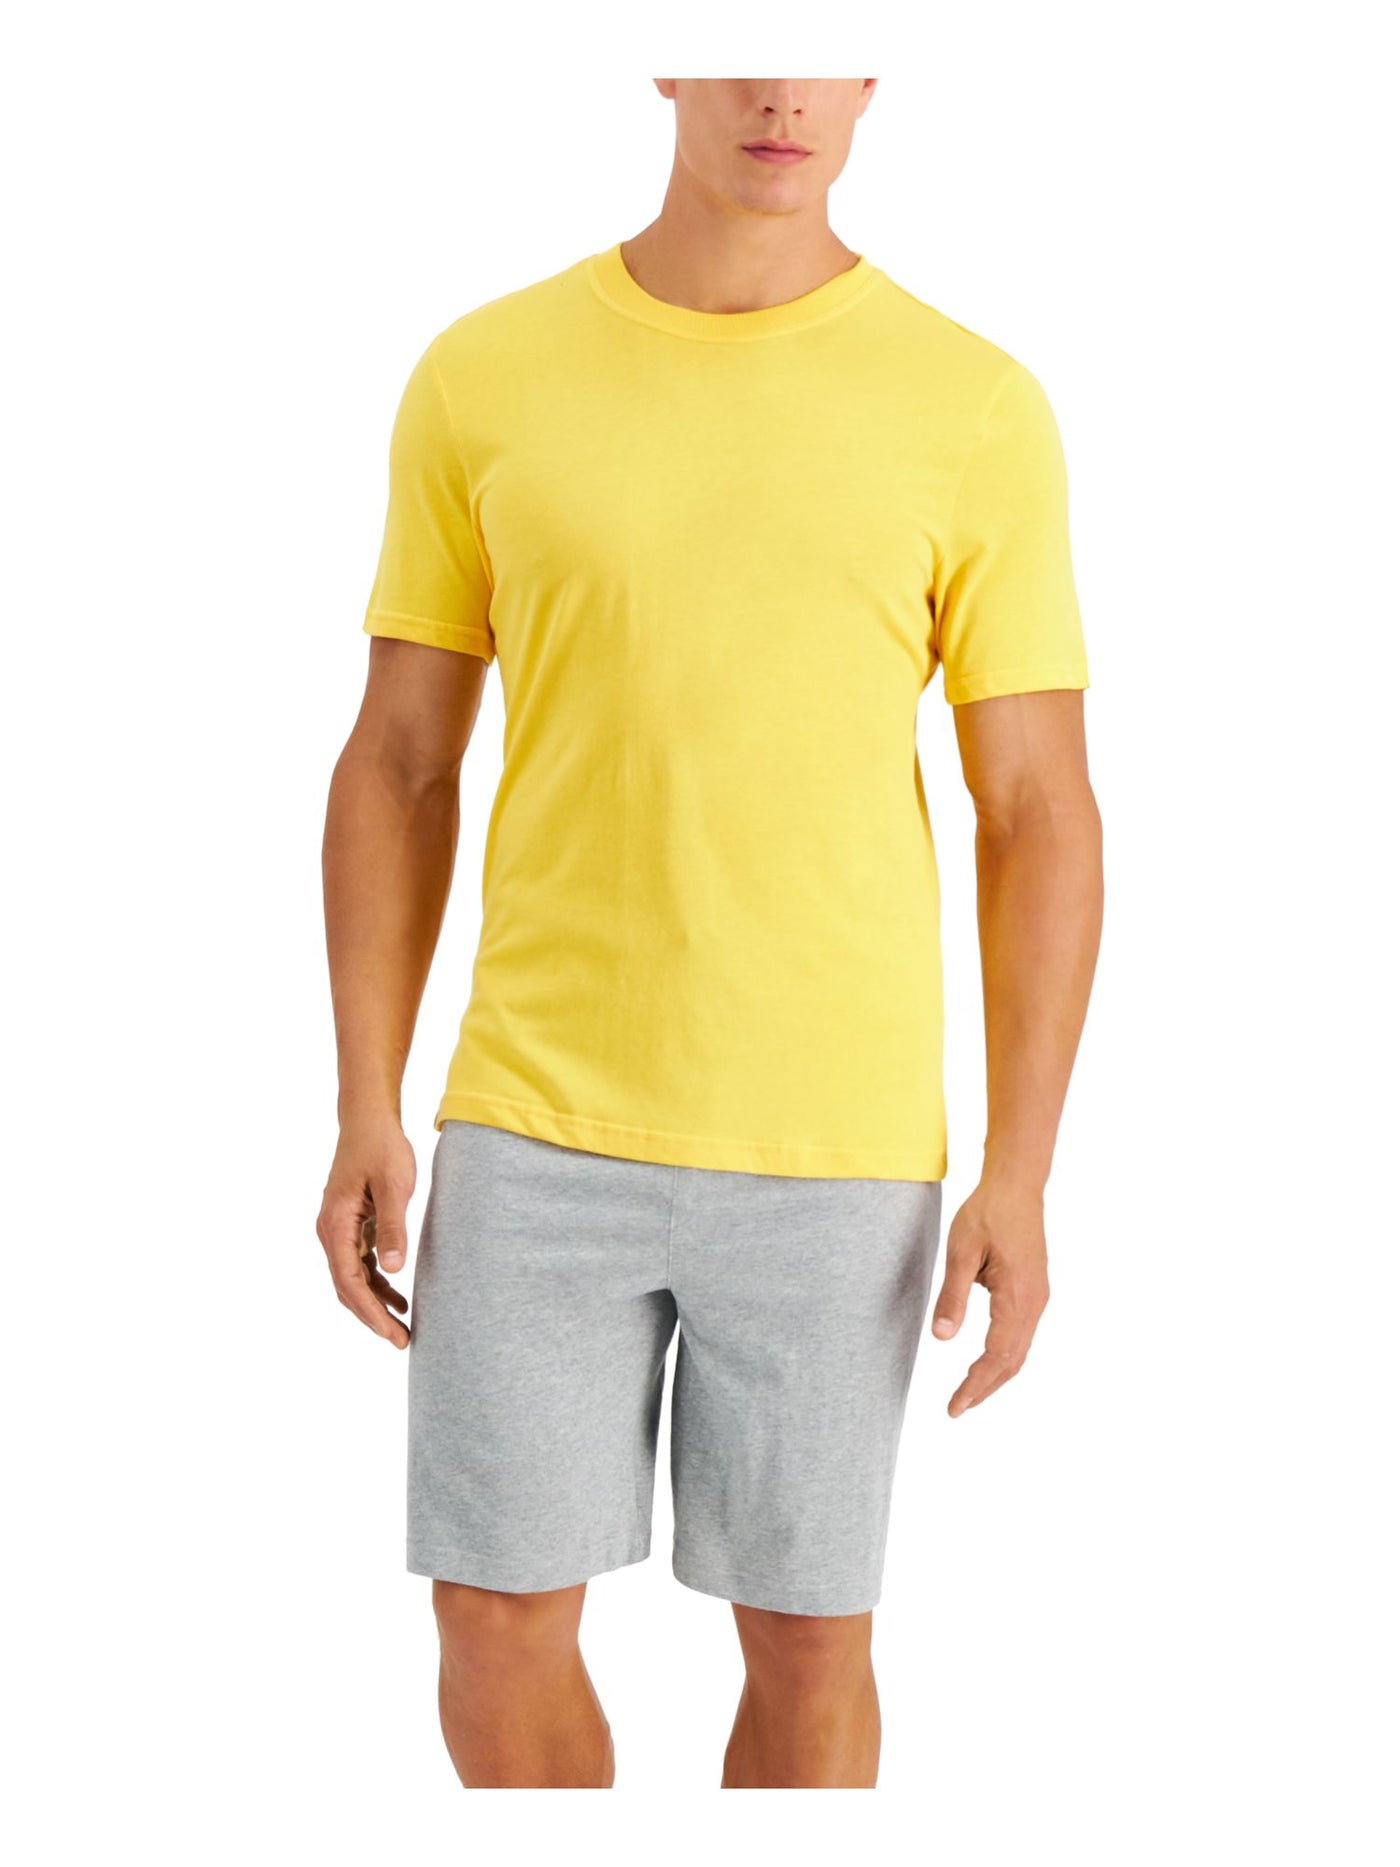 CLUBROOM Mens Yellow Drawstring Short Sleeve T-Shirt Top Shorts Pants Pajamas S